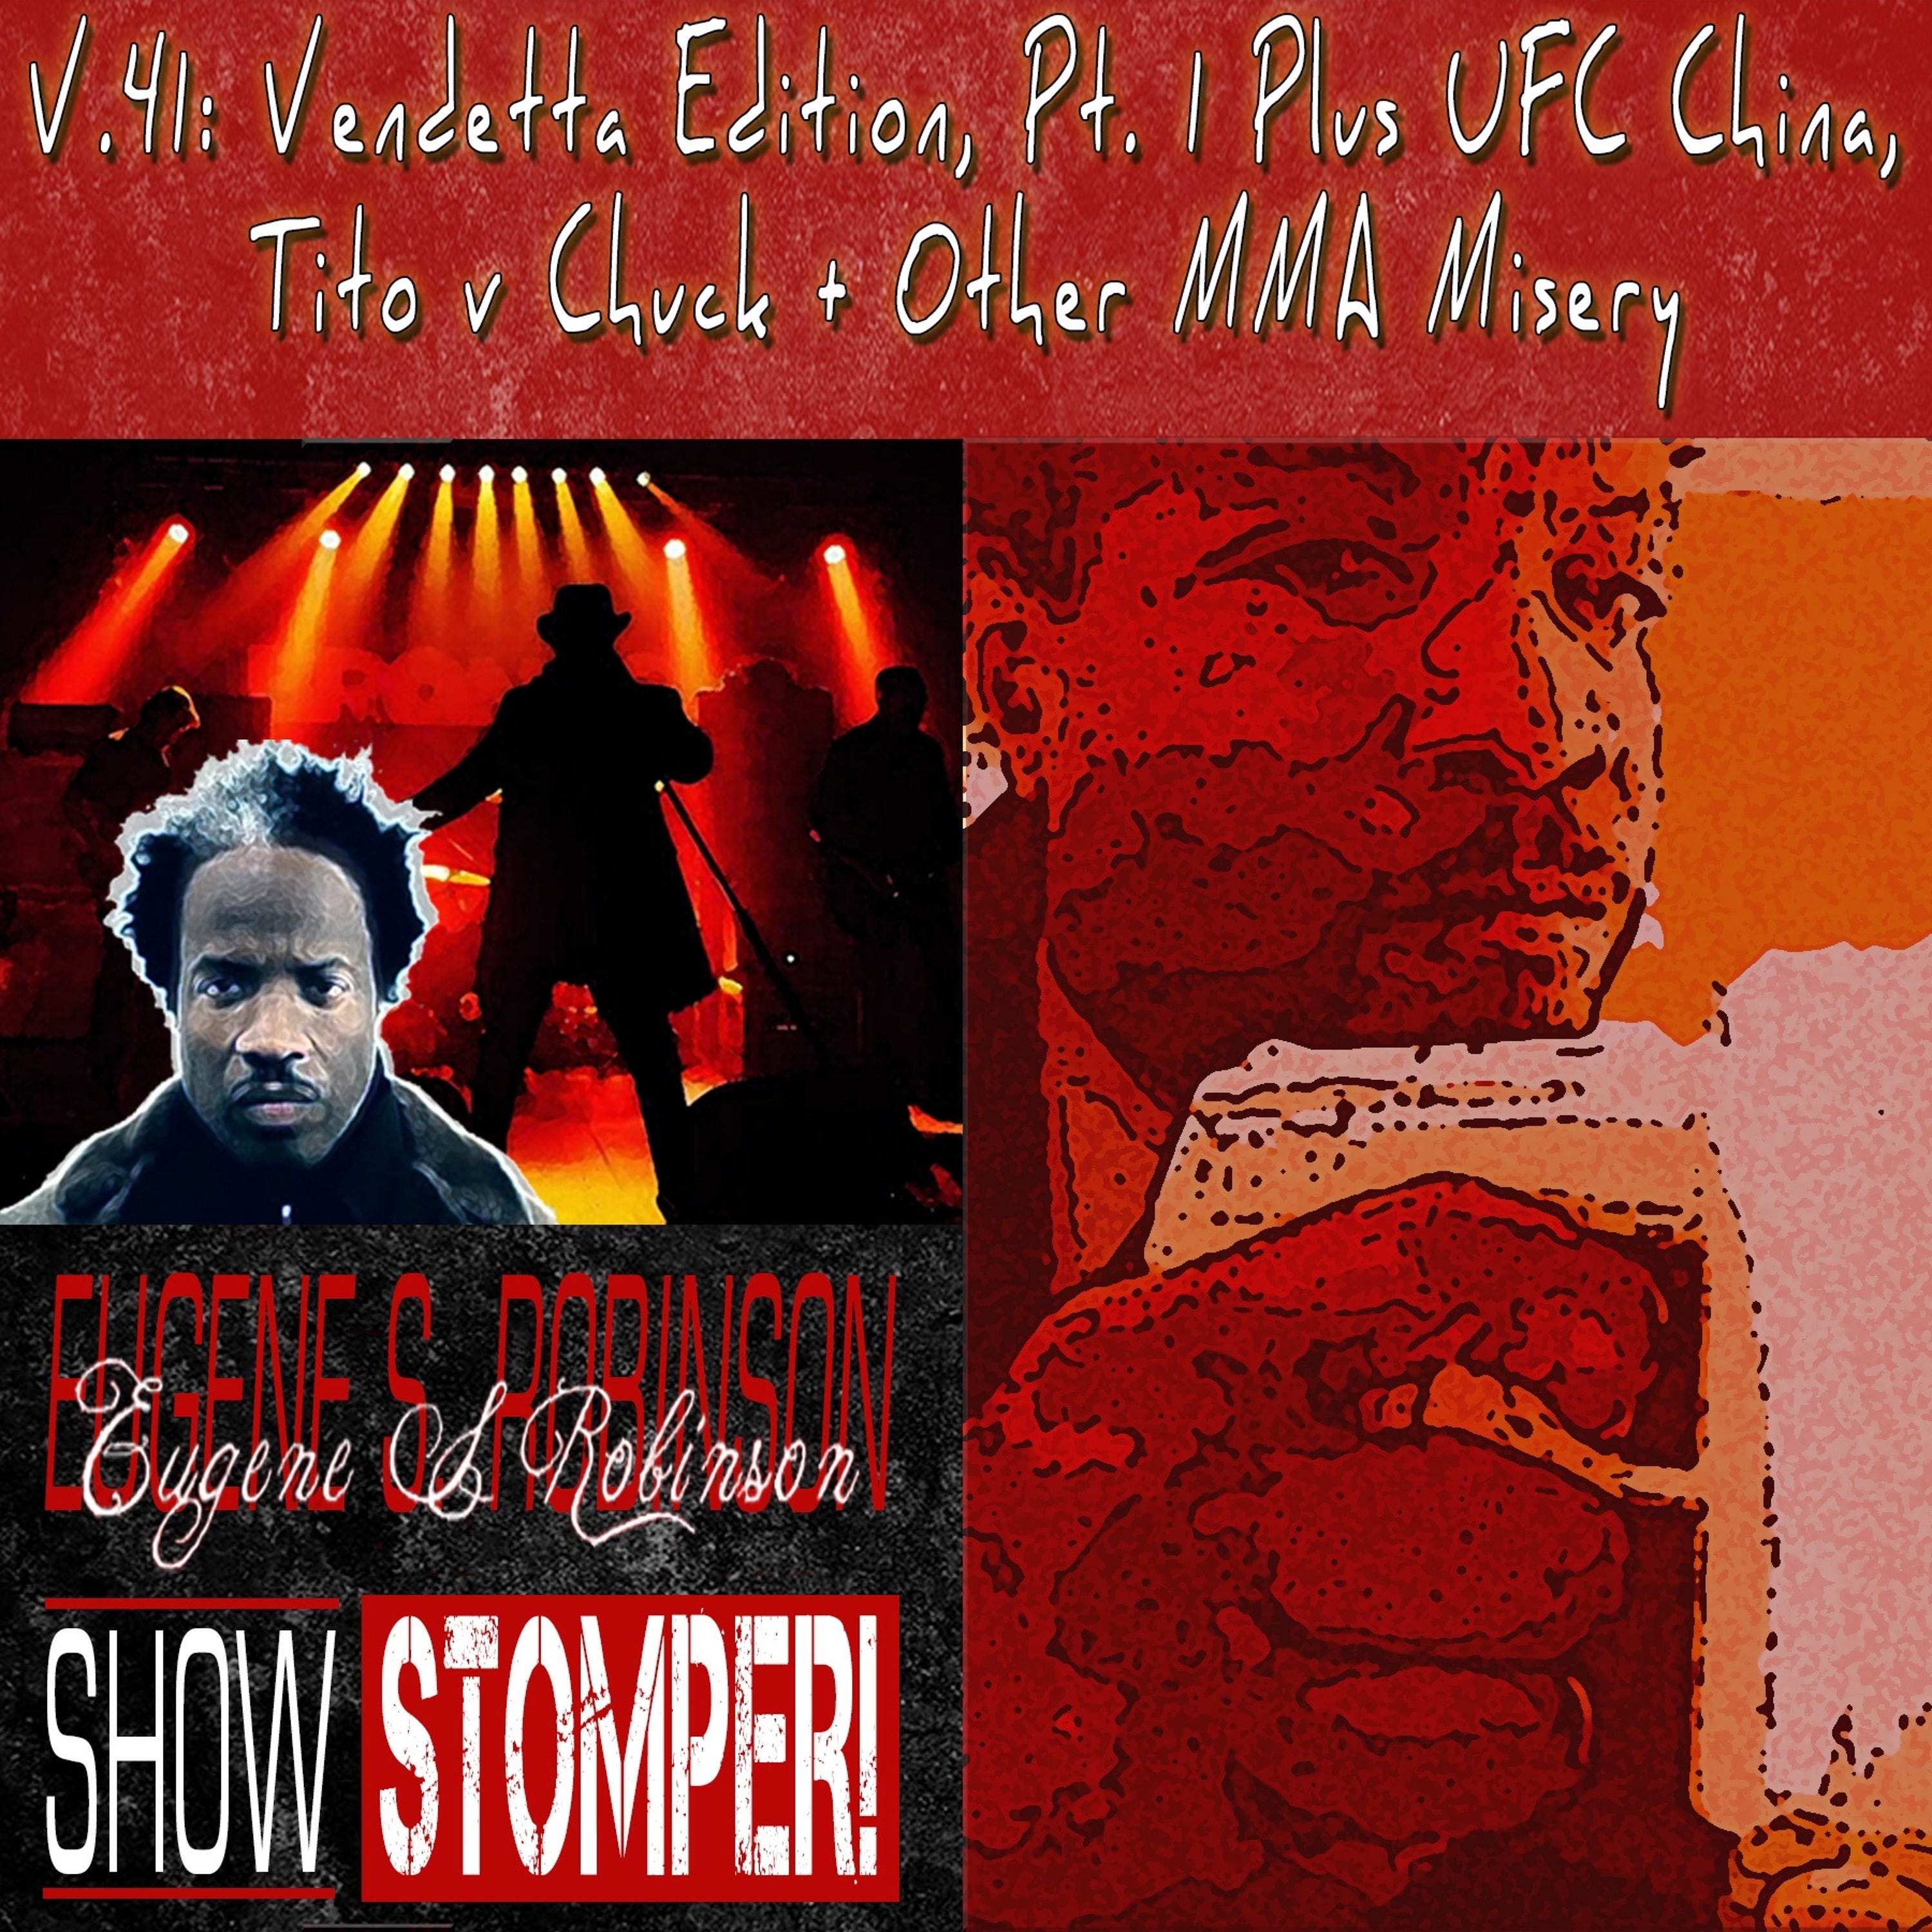 The Eugene S. Robinson Show Stomper! V.41-Vendetta Edition Pt.1 + UFC China Tito V Chuck....